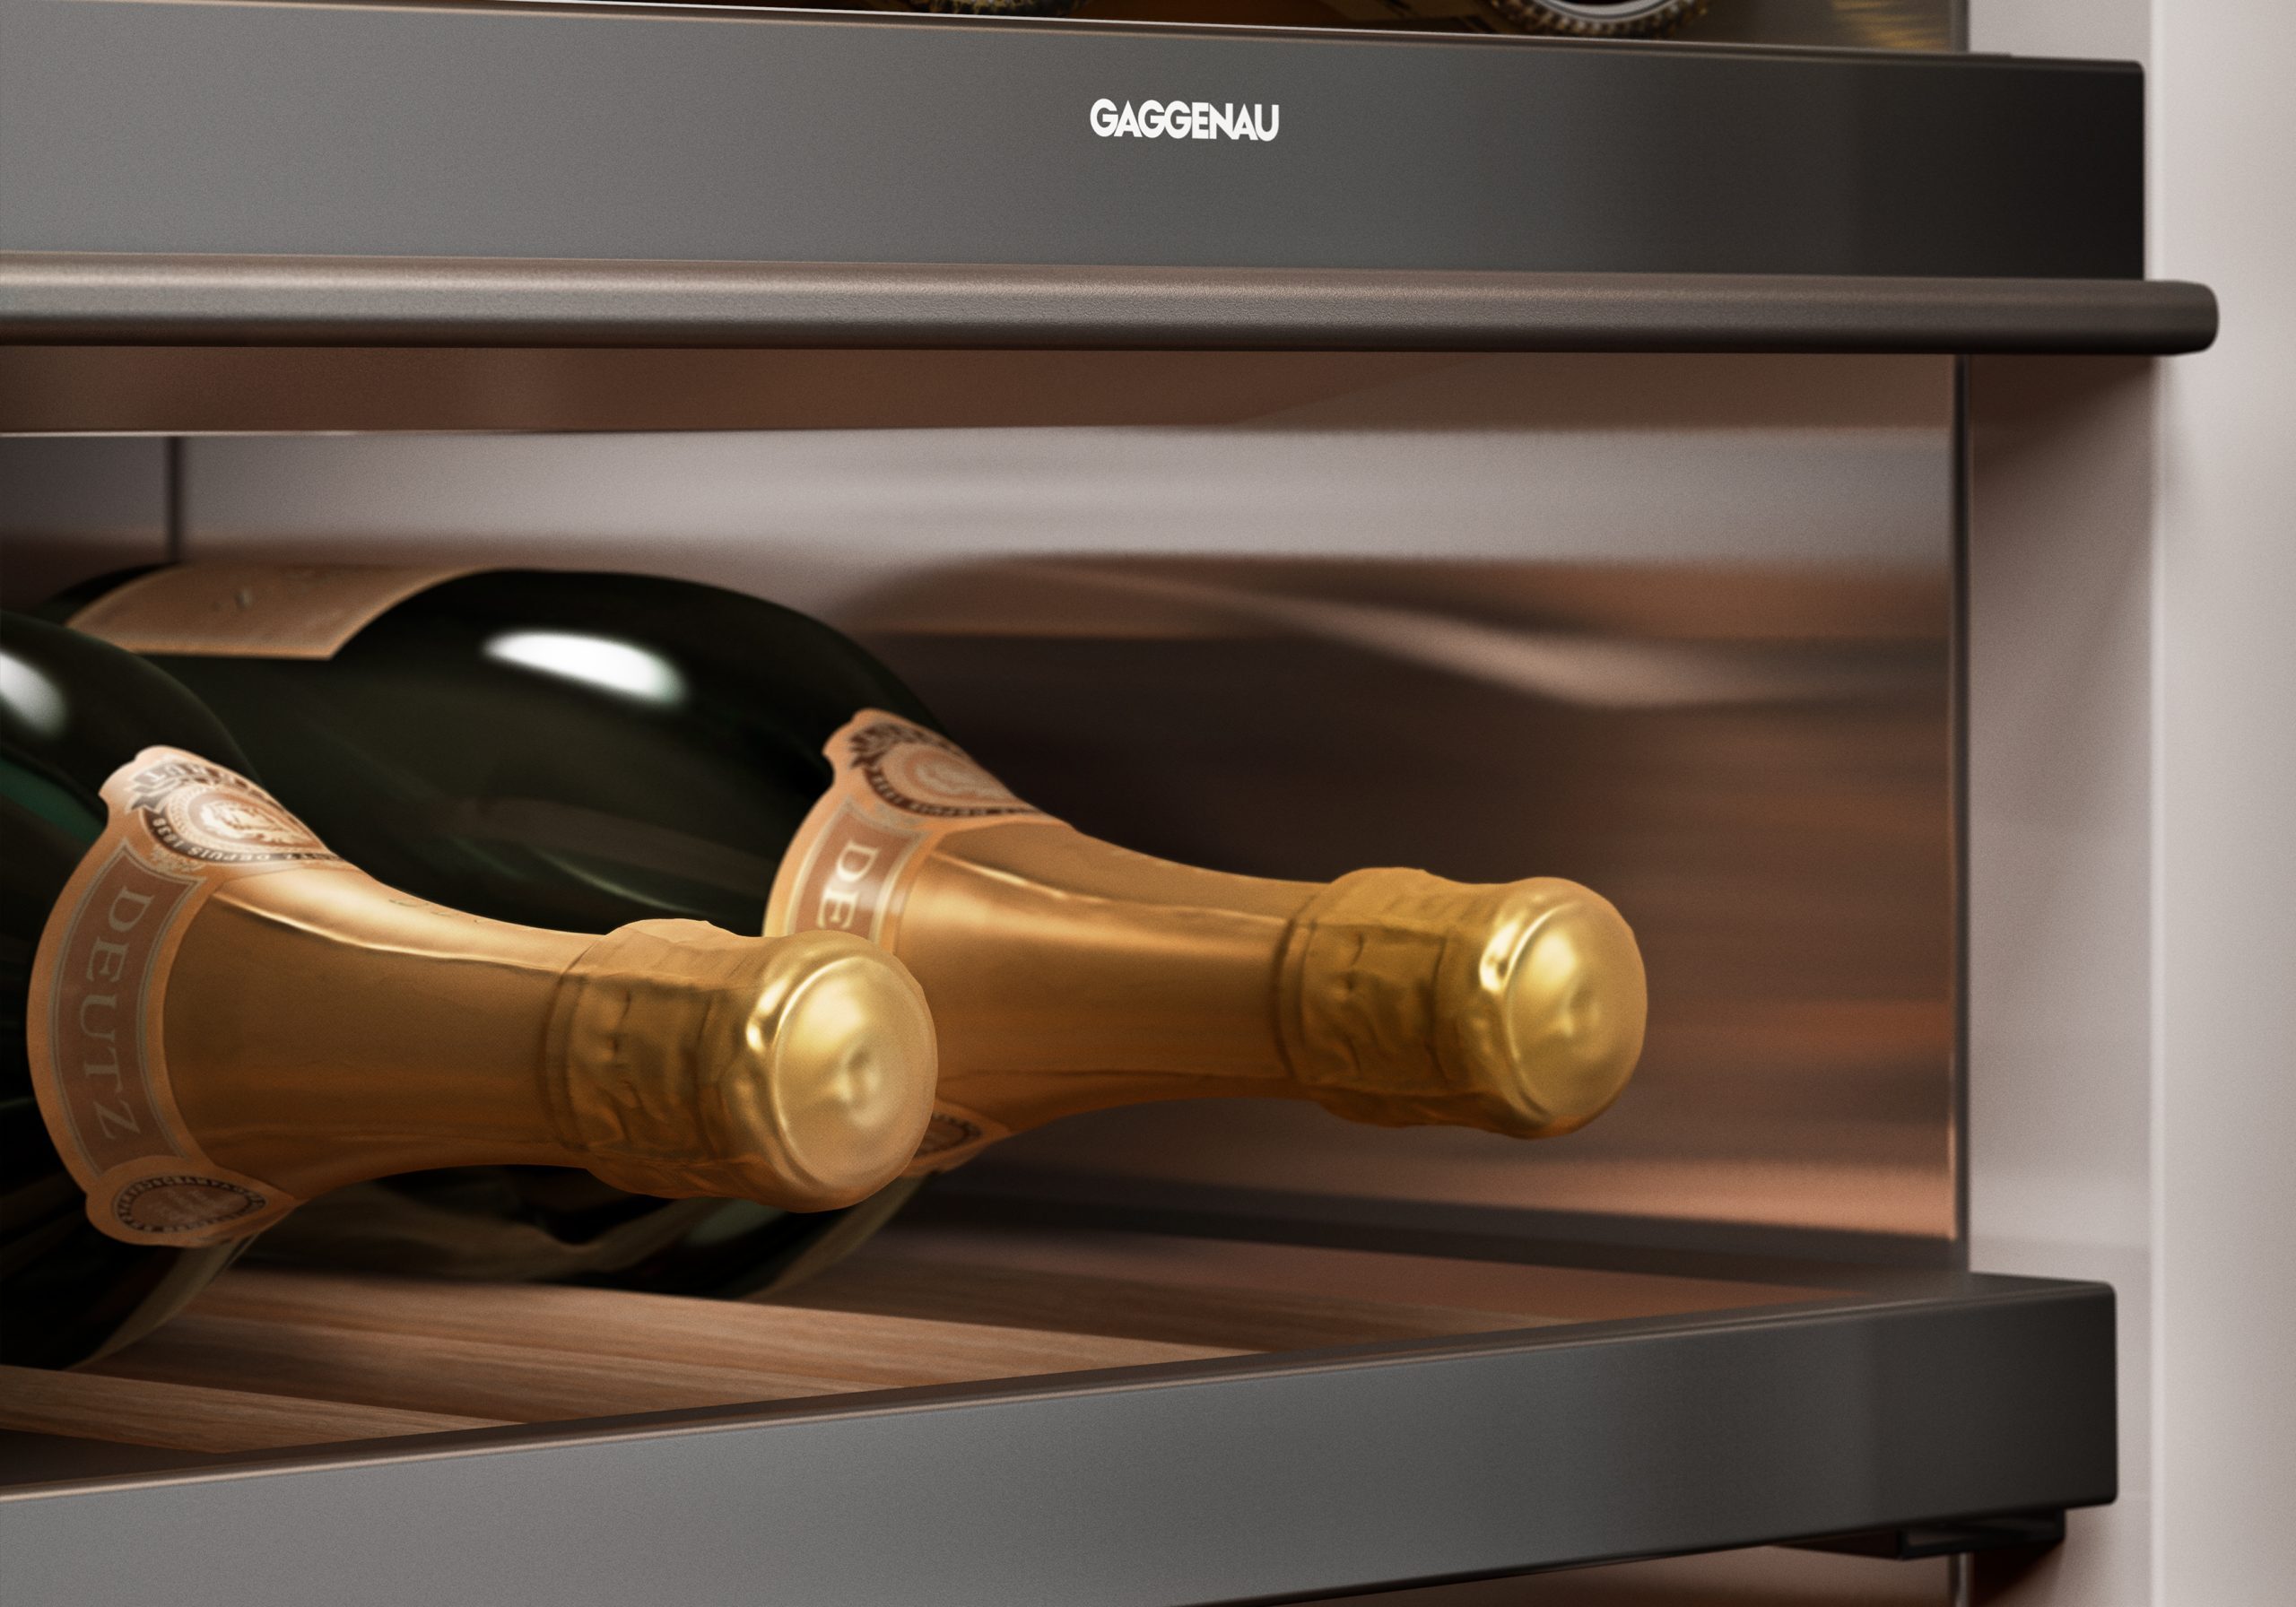 Gaggenau appliances wine-cabinets